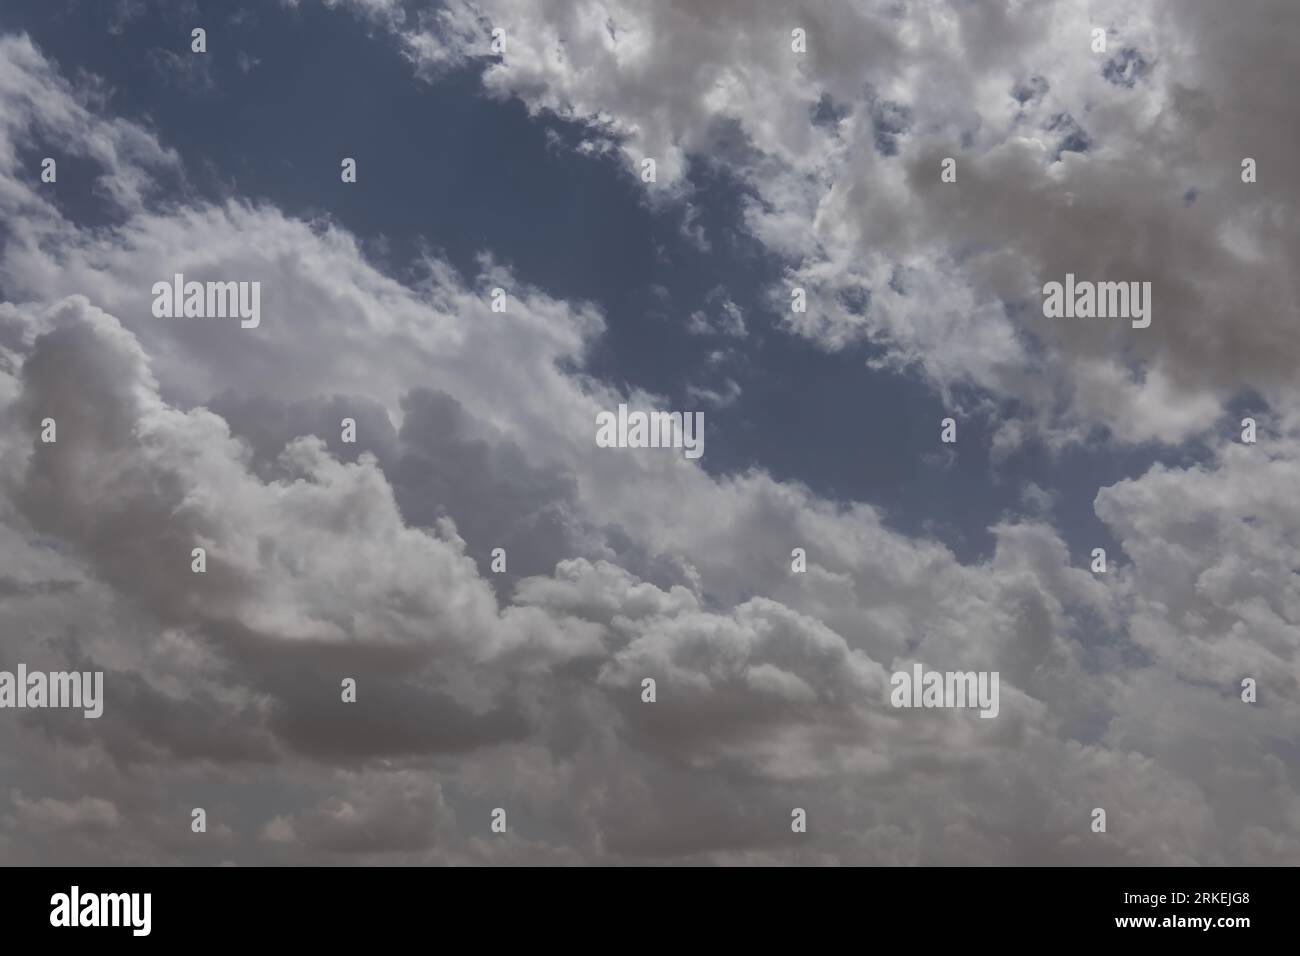 Ein fesselndes Foto fängt die Schönheit bewölkter Tage ein, wo die Leinwand des Himmels mit verschiedenen Wolkentönen geschmückt ist, was ein bezauberndes Spiel darstellt Stockfoto